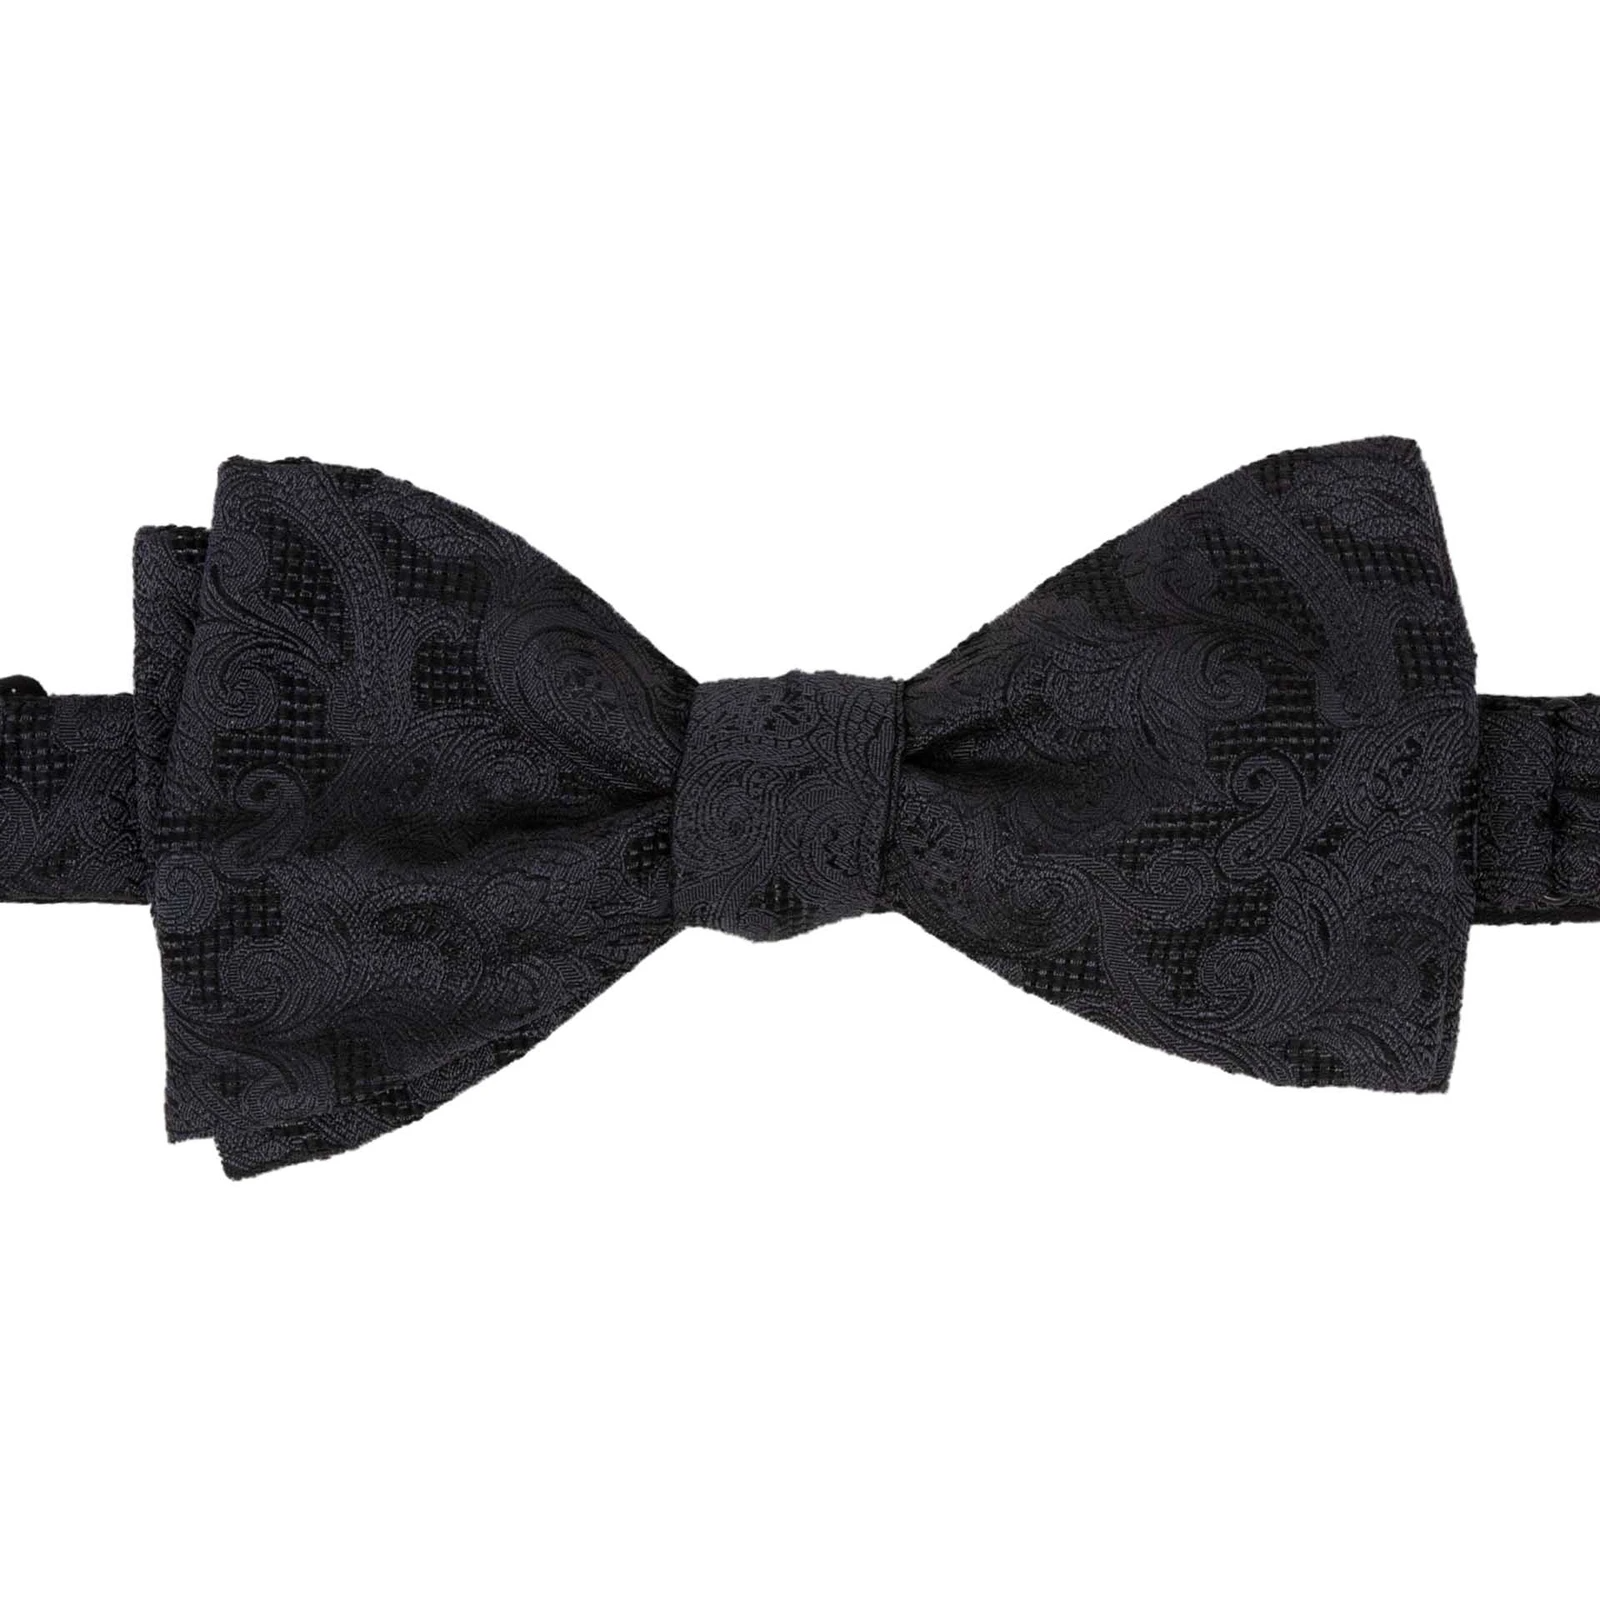 Black Jacquard Pattern Self-Tie Silk Bow Tie